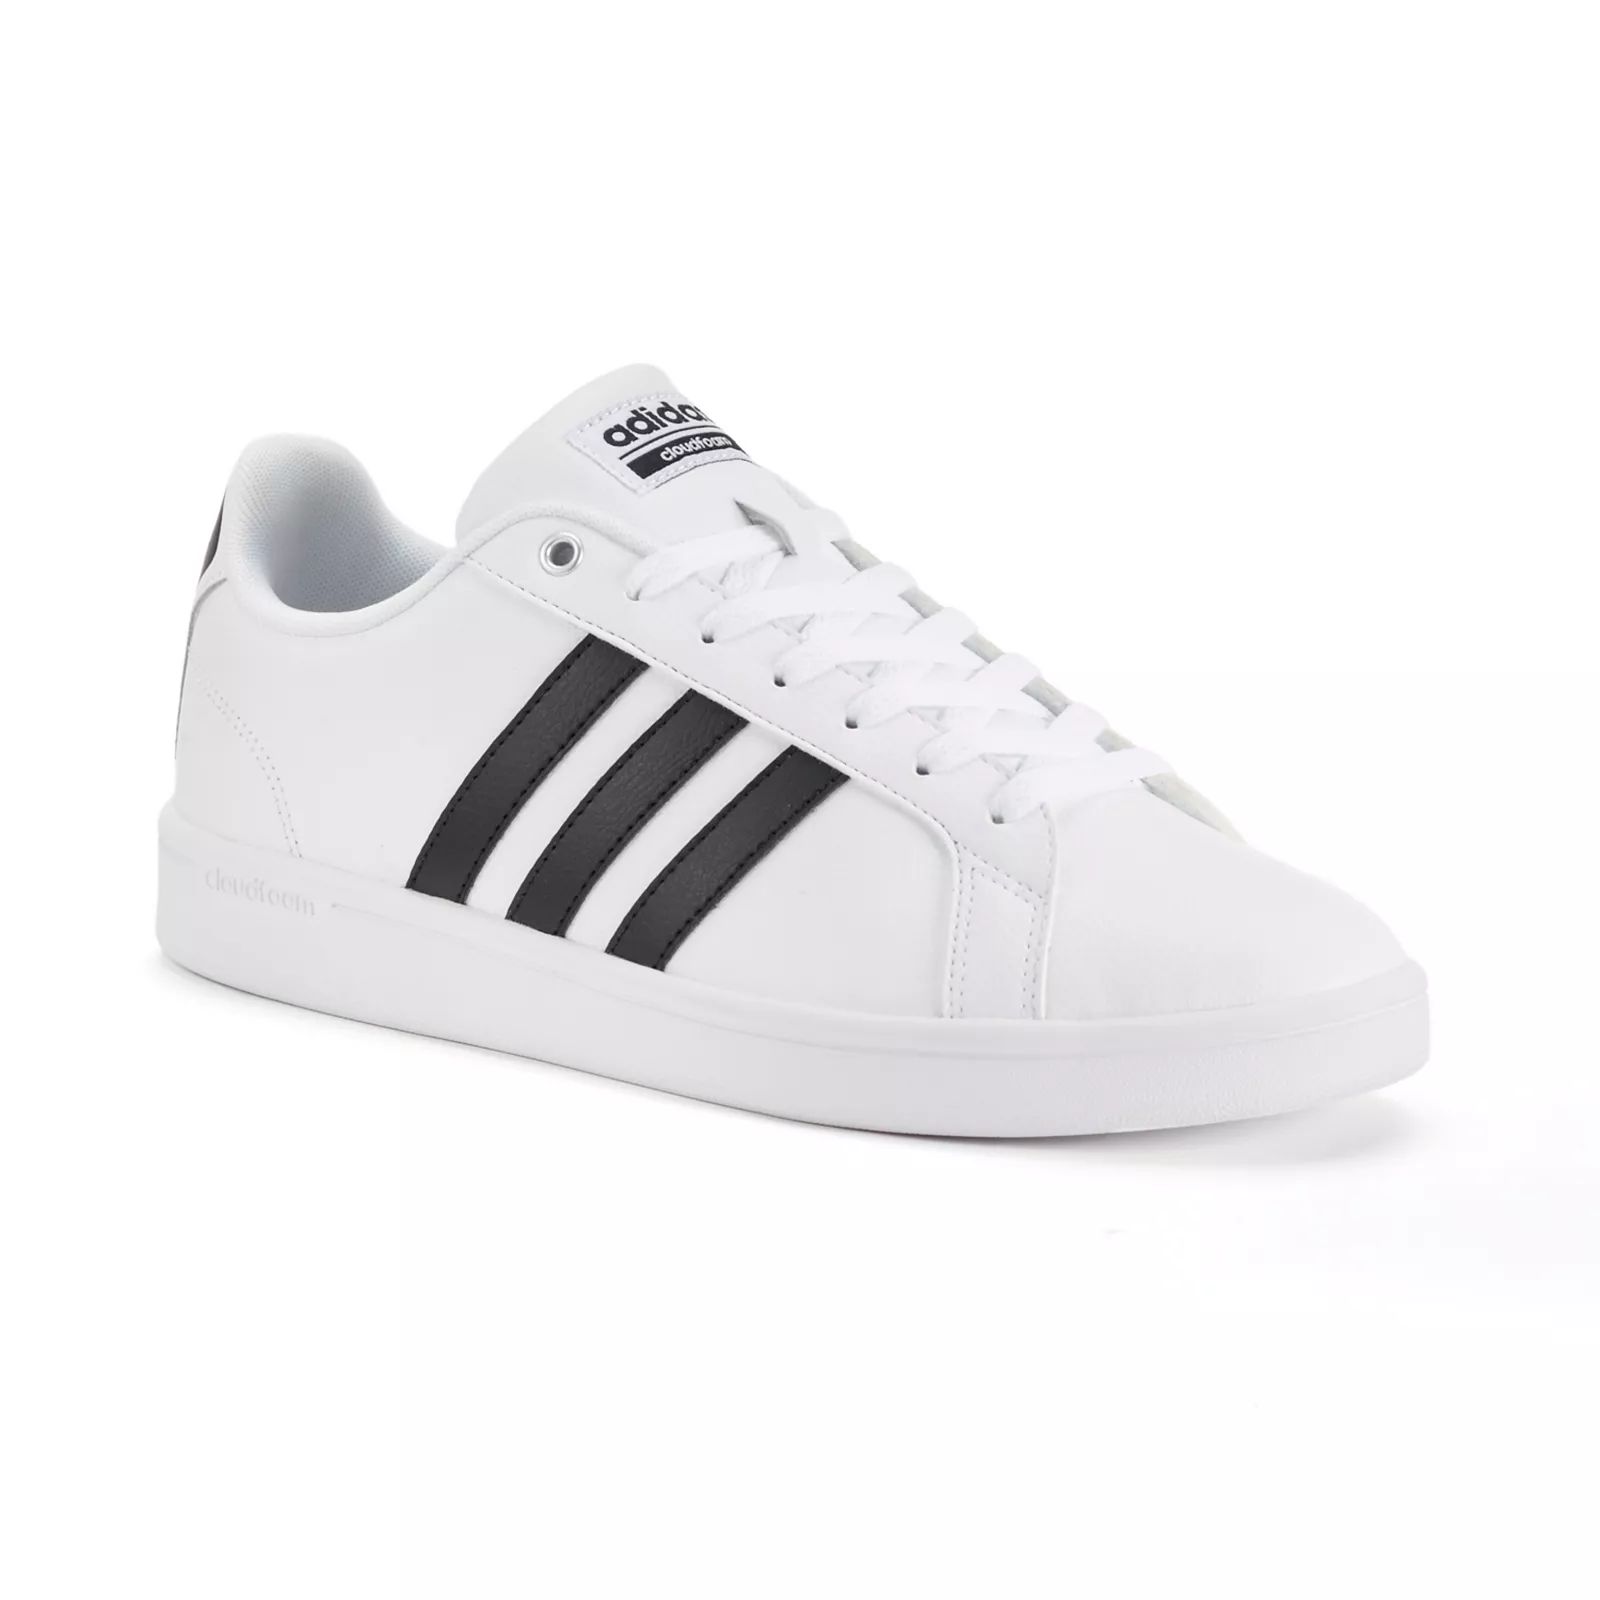 Adidas NEO Cloudfoam Advantage Stripe Men's Shoes, Size: 8.5, White | Kohl's